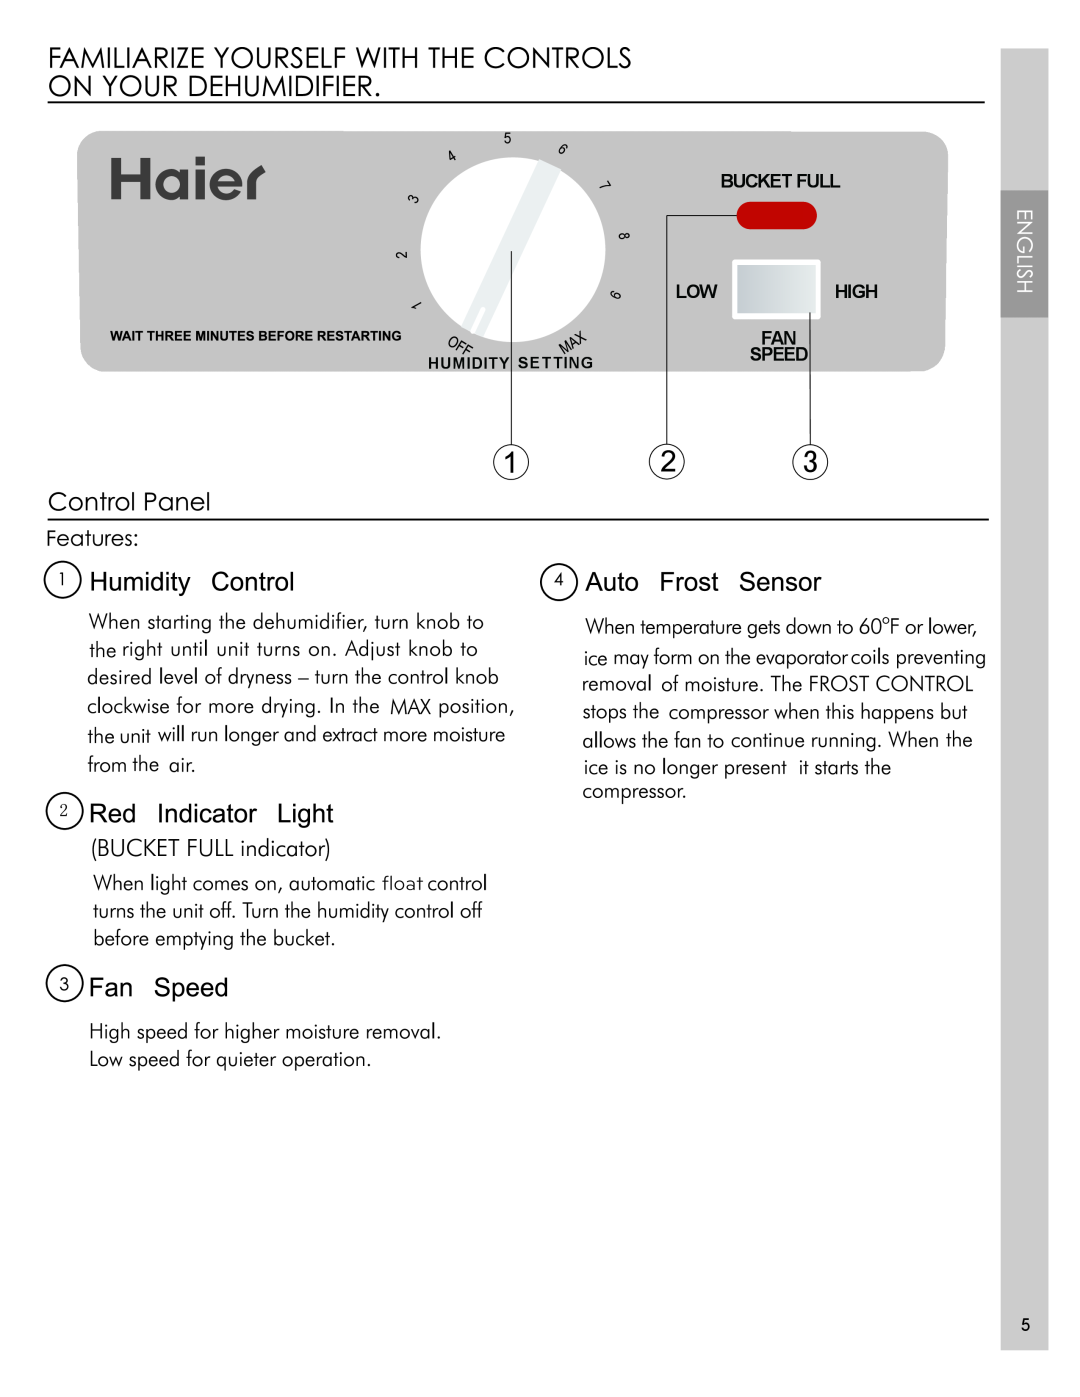 Haier DM32M-T, DM32M-L manual ﬂoat, Bucket Full Low High Fan Speed 